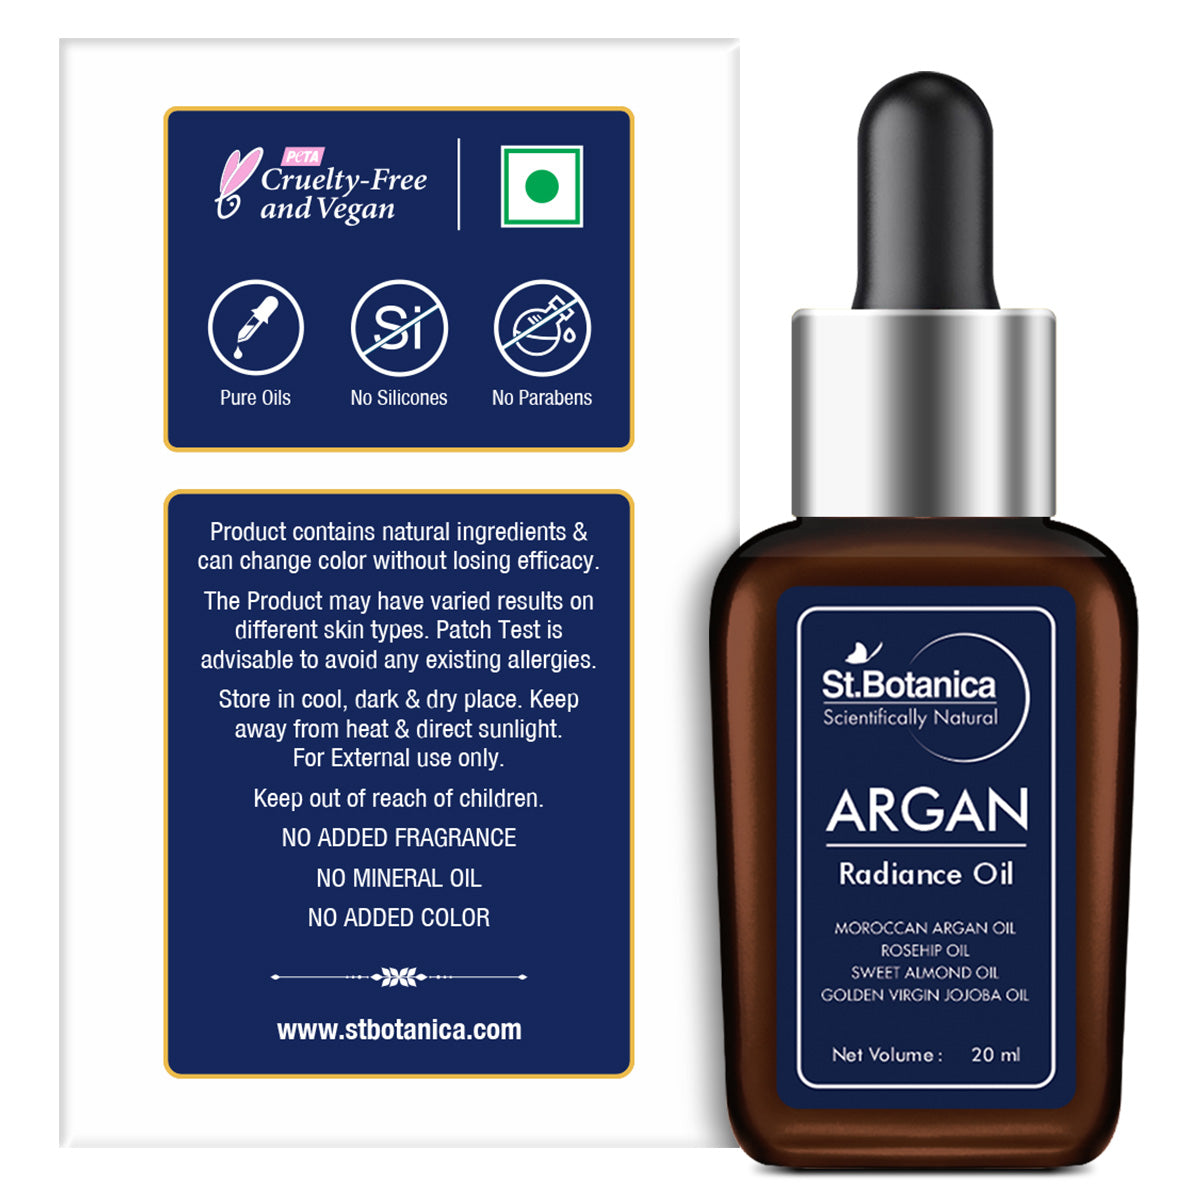 St.Botanica Argan Radiance Face Oil - Skin Brightening, Anti Aging & Anti Wrinkle Serum, 20 ml (STBOT499)